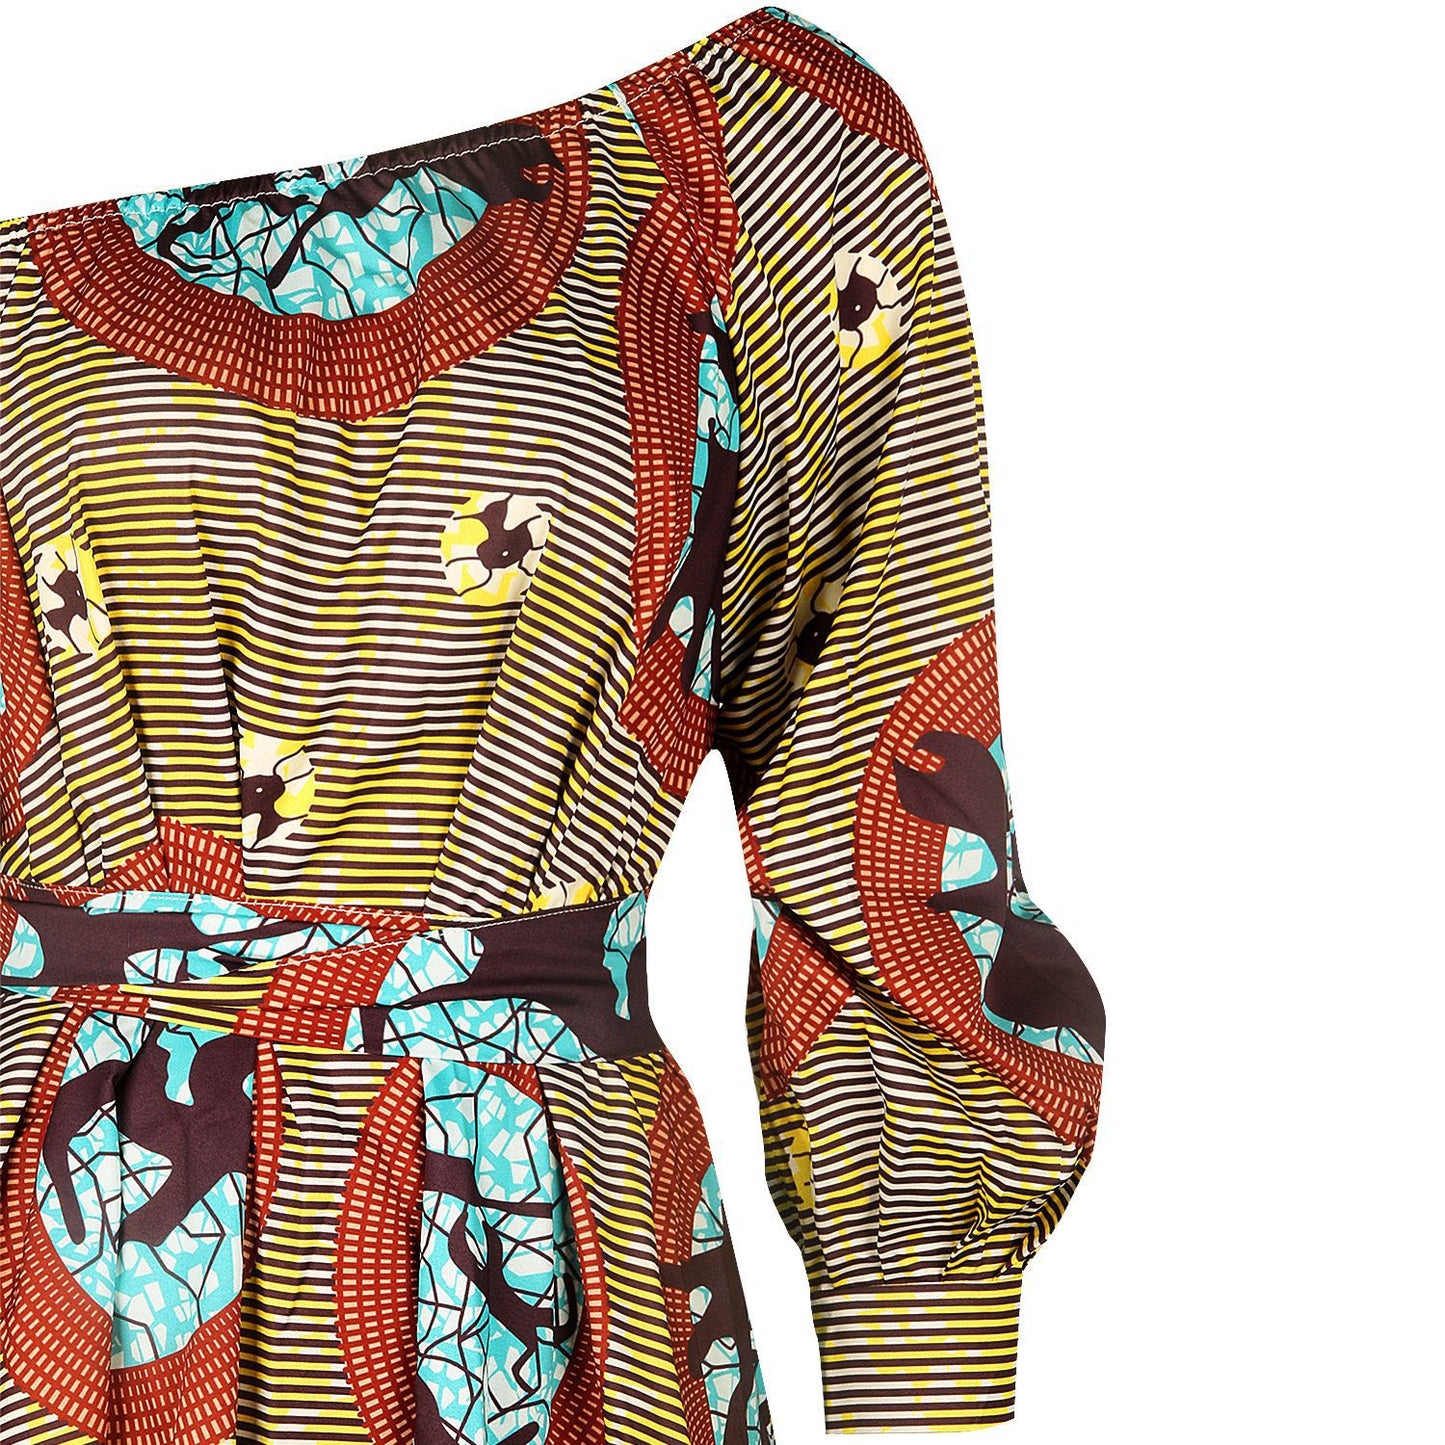 Designed African One Shoulder Long Sleeves Short Dresses